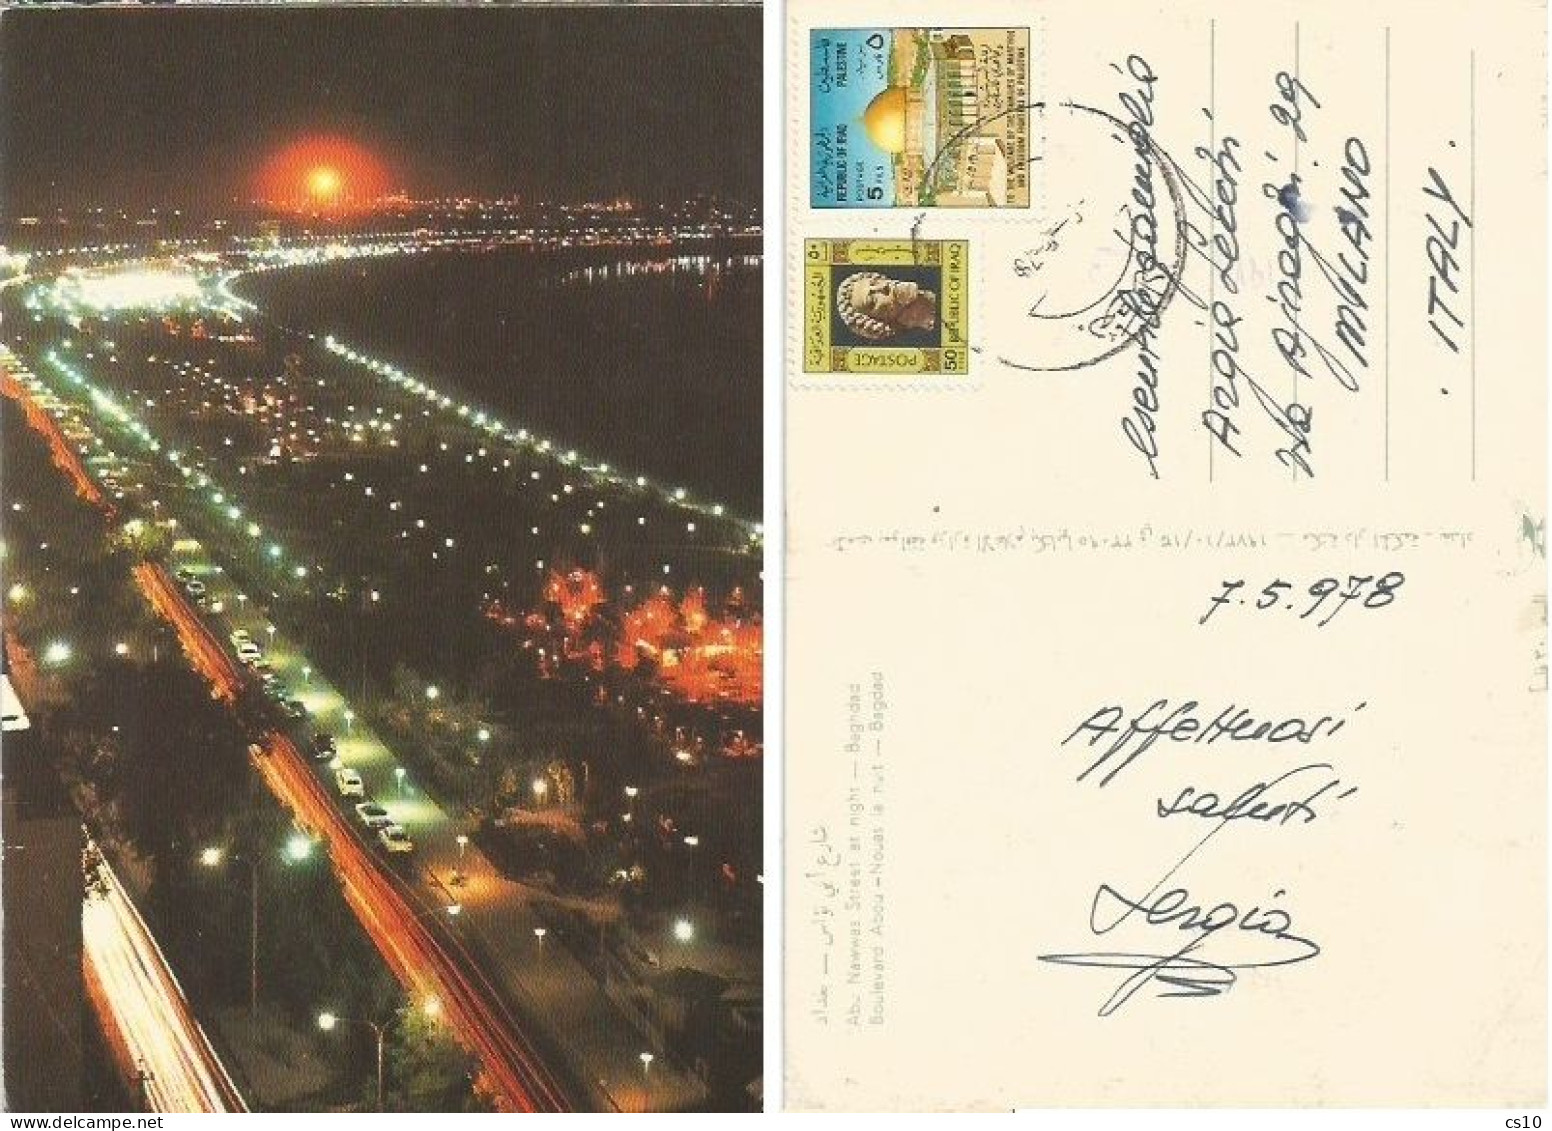 Iraq Irak Baghdad Abu Nawwas Street At Night - Pcard Used 1978 To Italy - Iraq